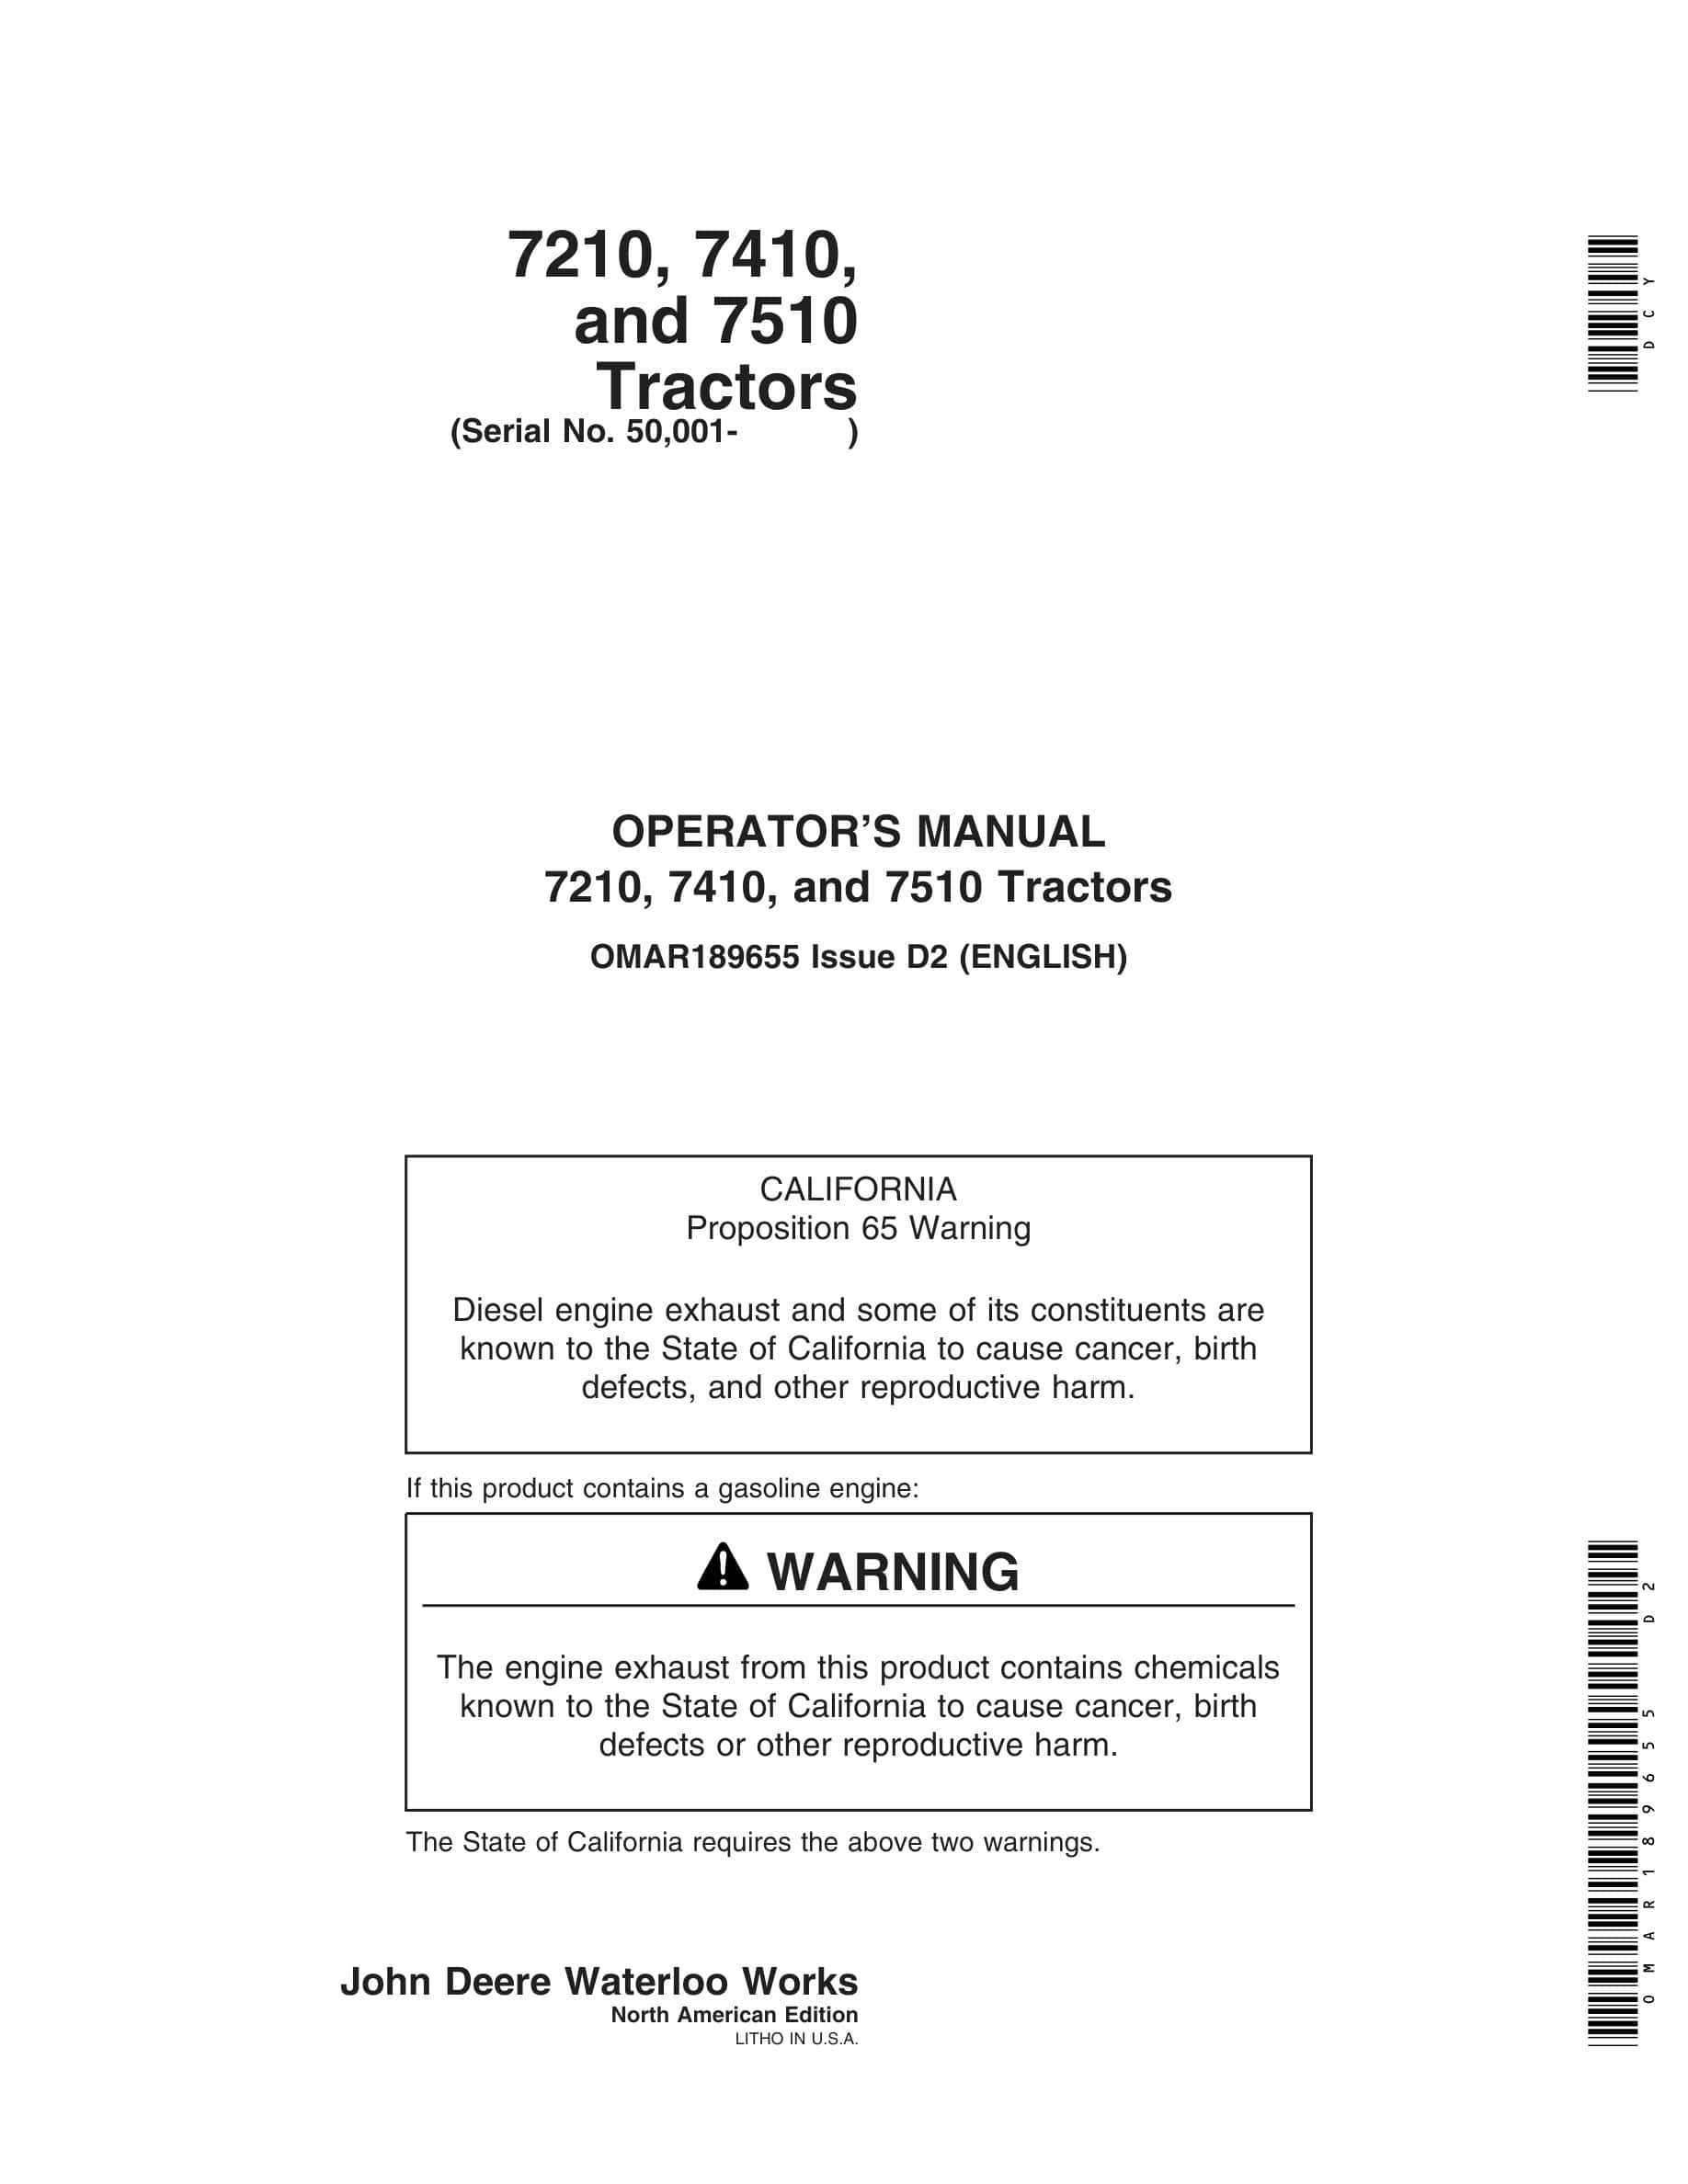 John Deere 7210, 7410, and 7510 Tractor Operator Manual OMAR189655-1